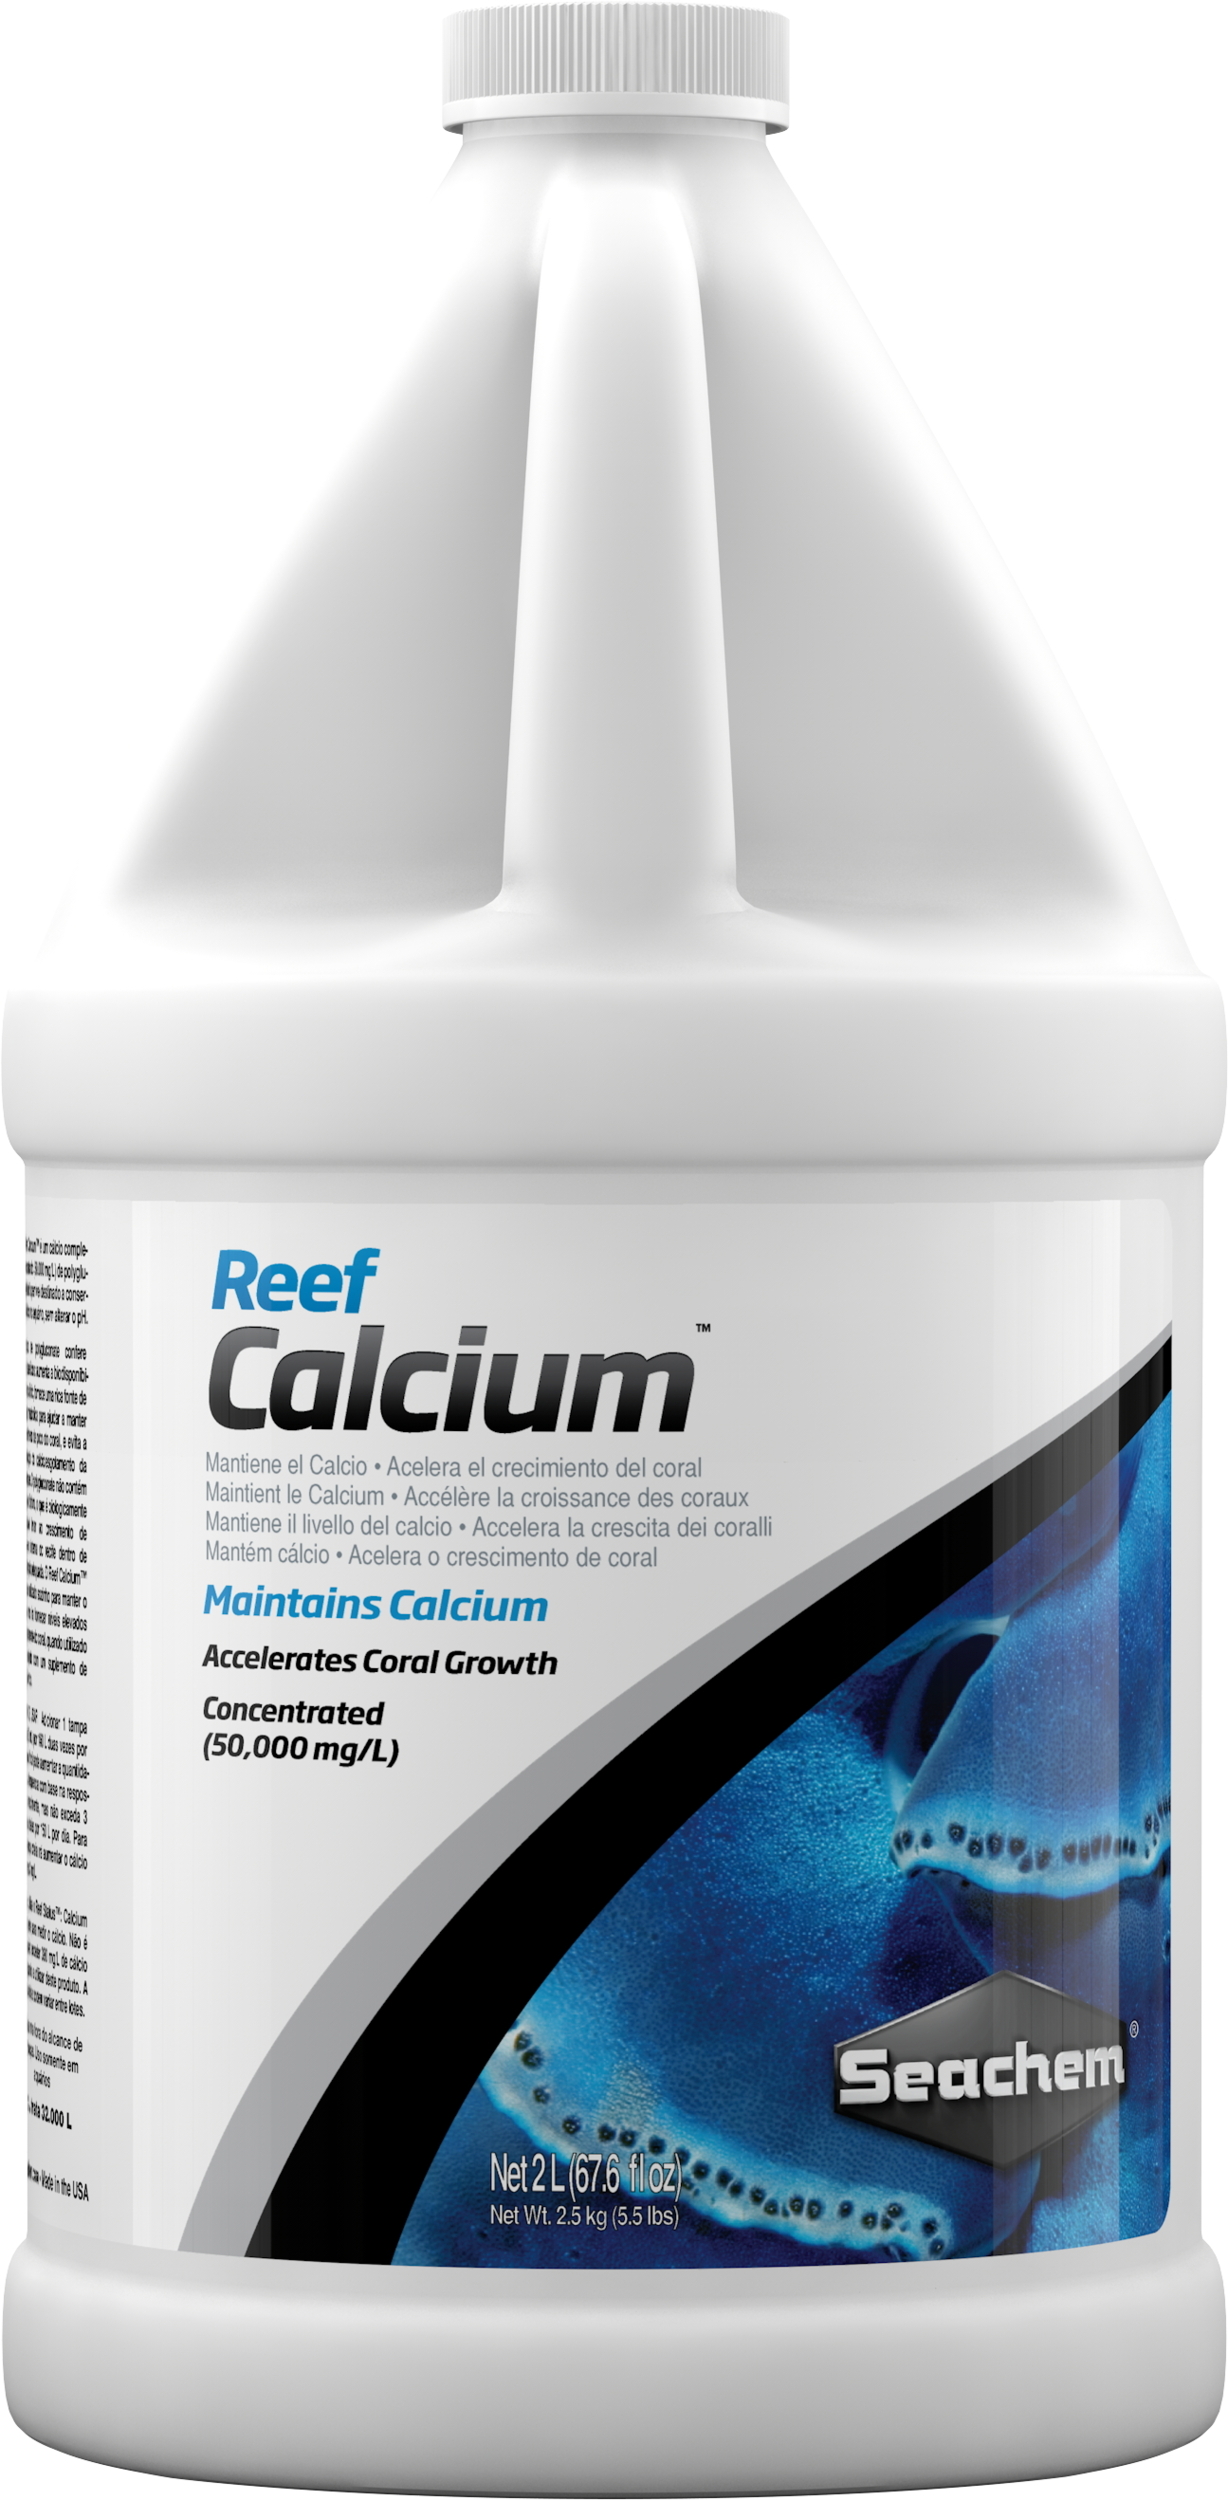 SEACHEM Reef Calcium 2 L maintient le Calcium en aquarium sans modifier le pH